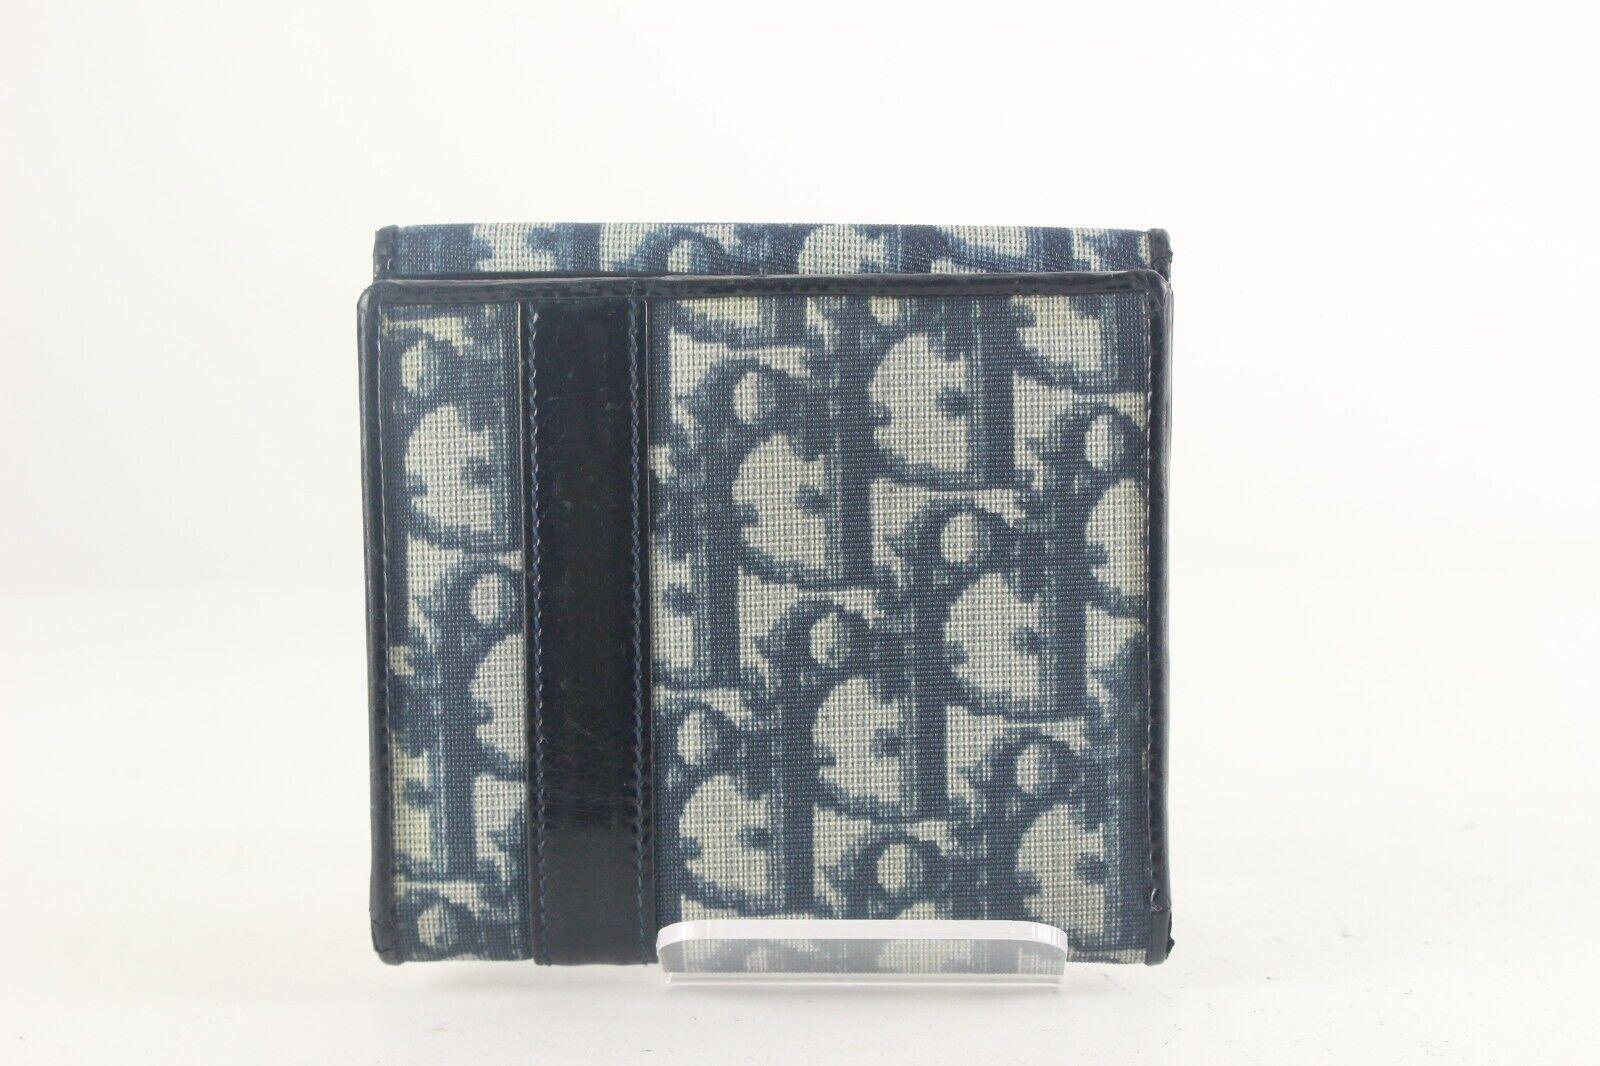 DIOR Blue Monogram Trotter D Charm Compact Wallet 1D726K 5